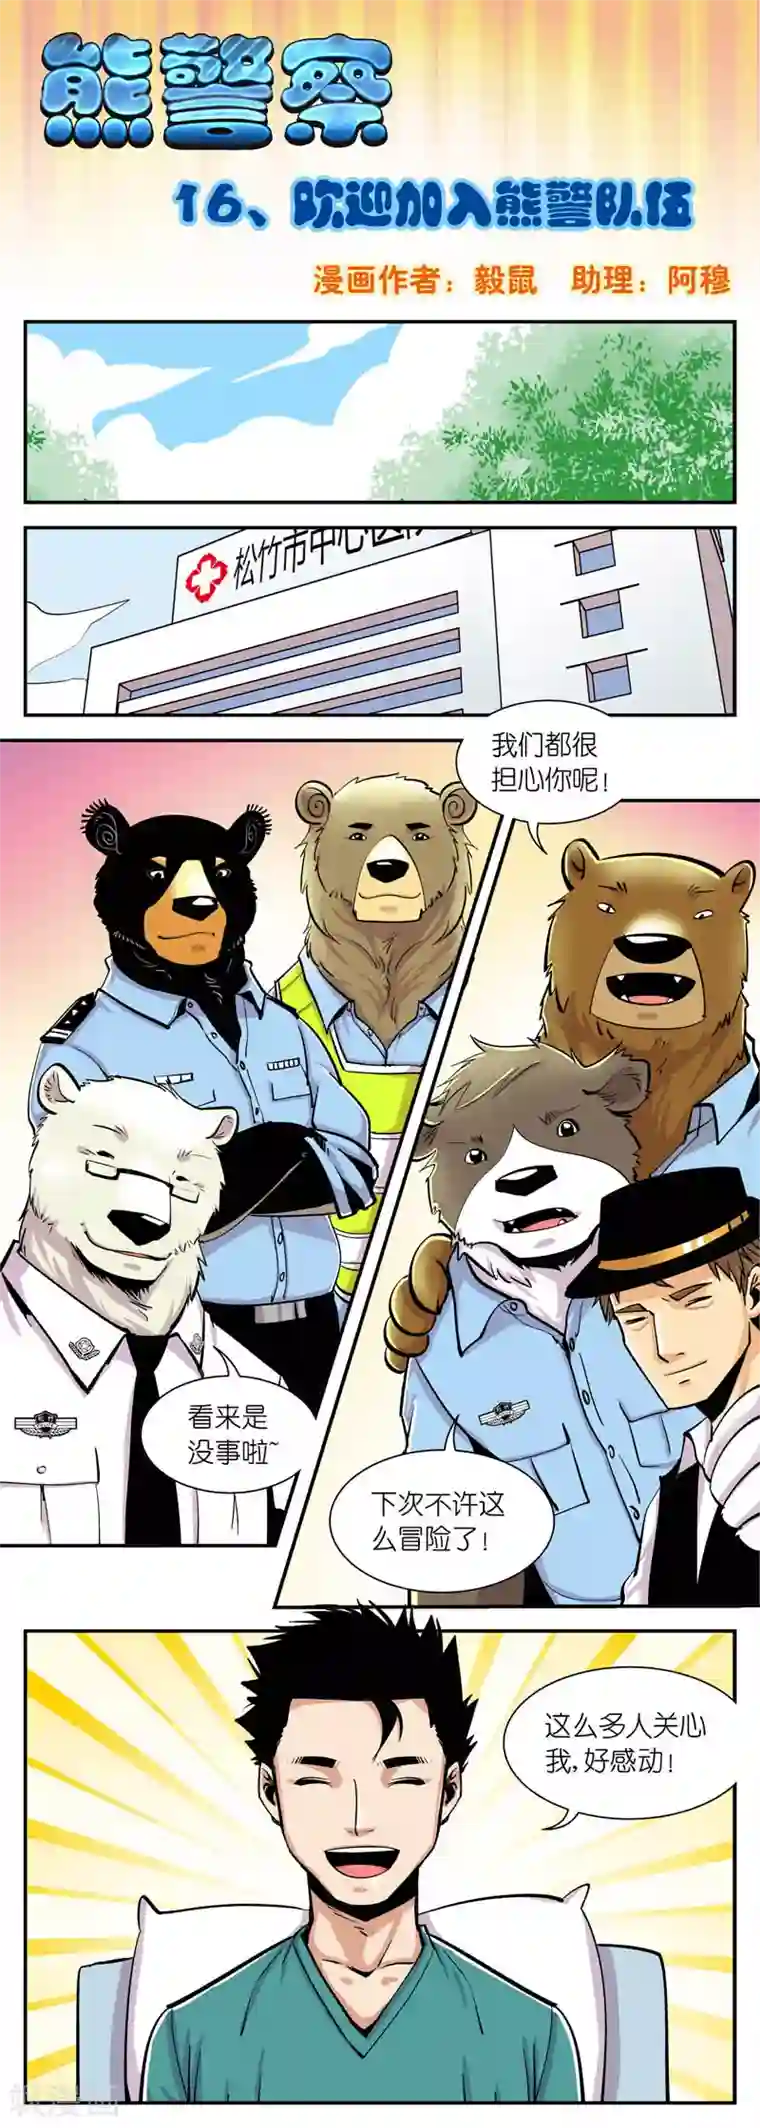 熊警察第16话 欢迎加入熊警队伍